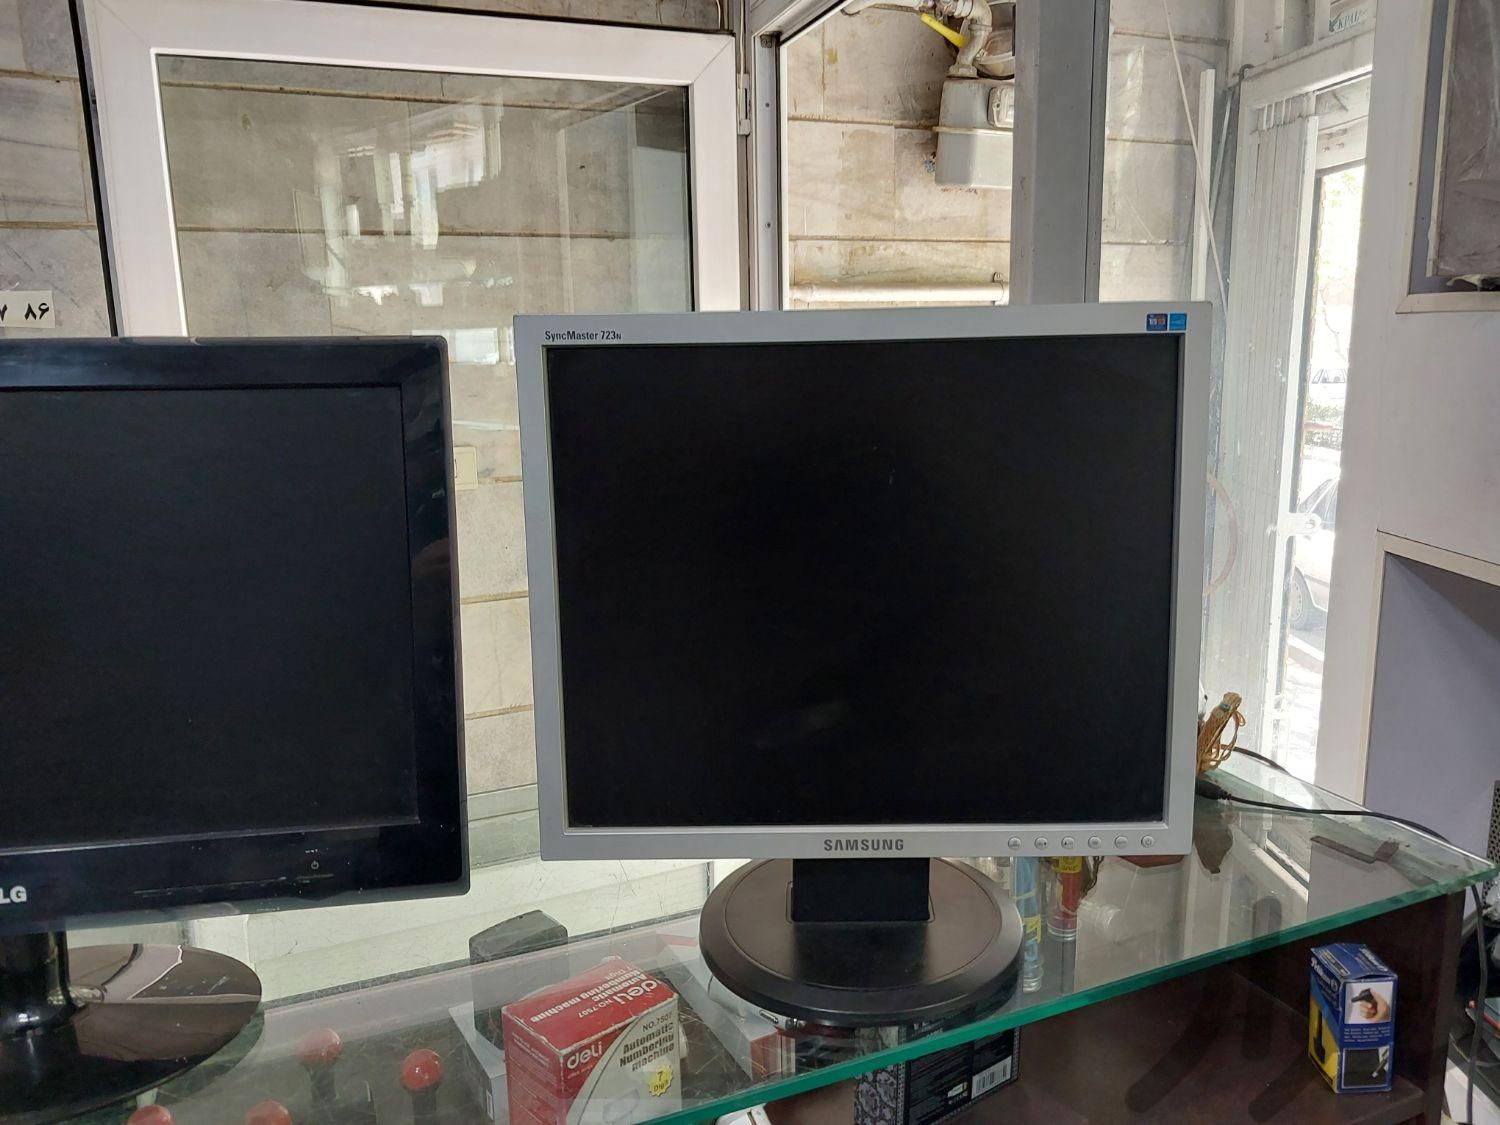 مانیتور مناسب دوربین و کامپیوتر با ضمانت|قطعات و لوازم جانبی رایانه|تهران, دردشت|دیوار